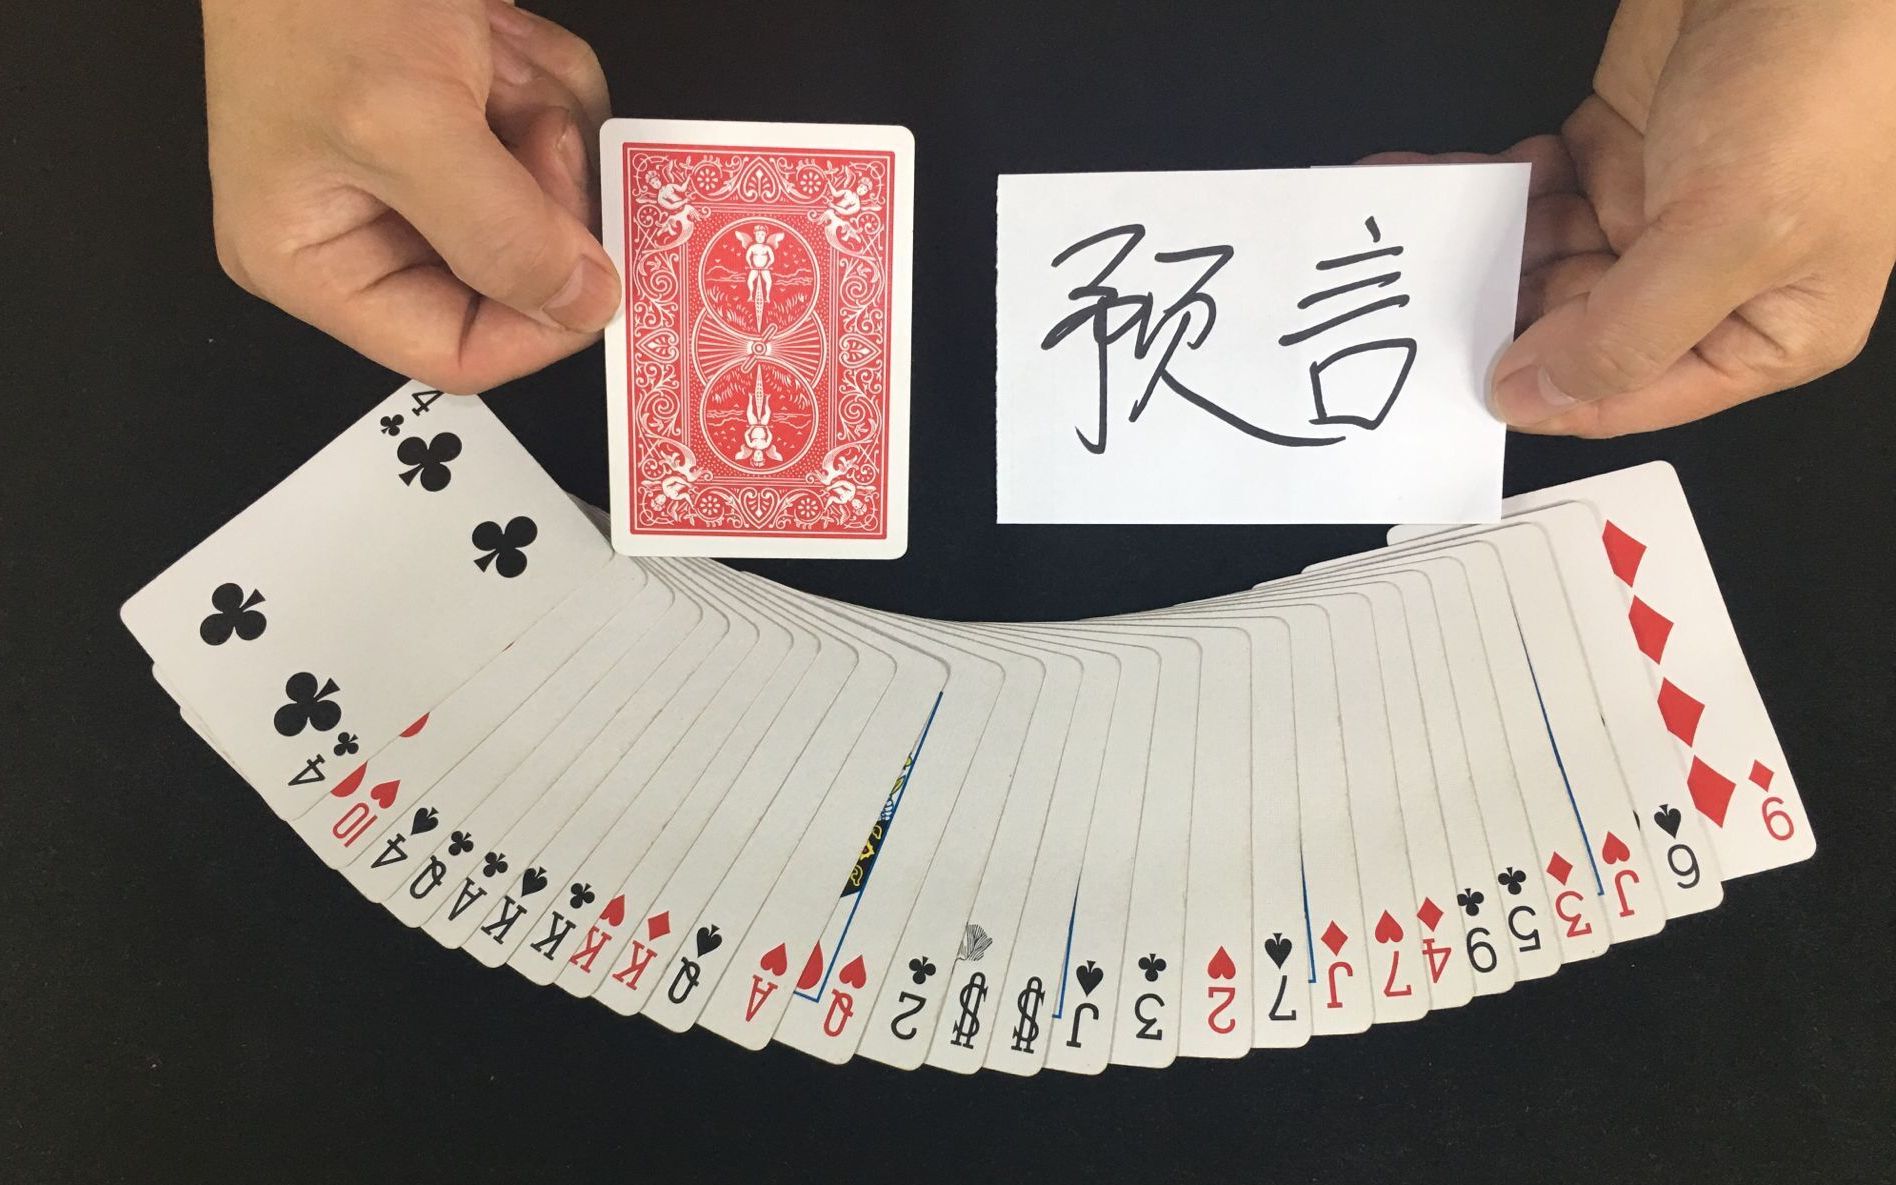 54张牌抽一张猜中魔术图片